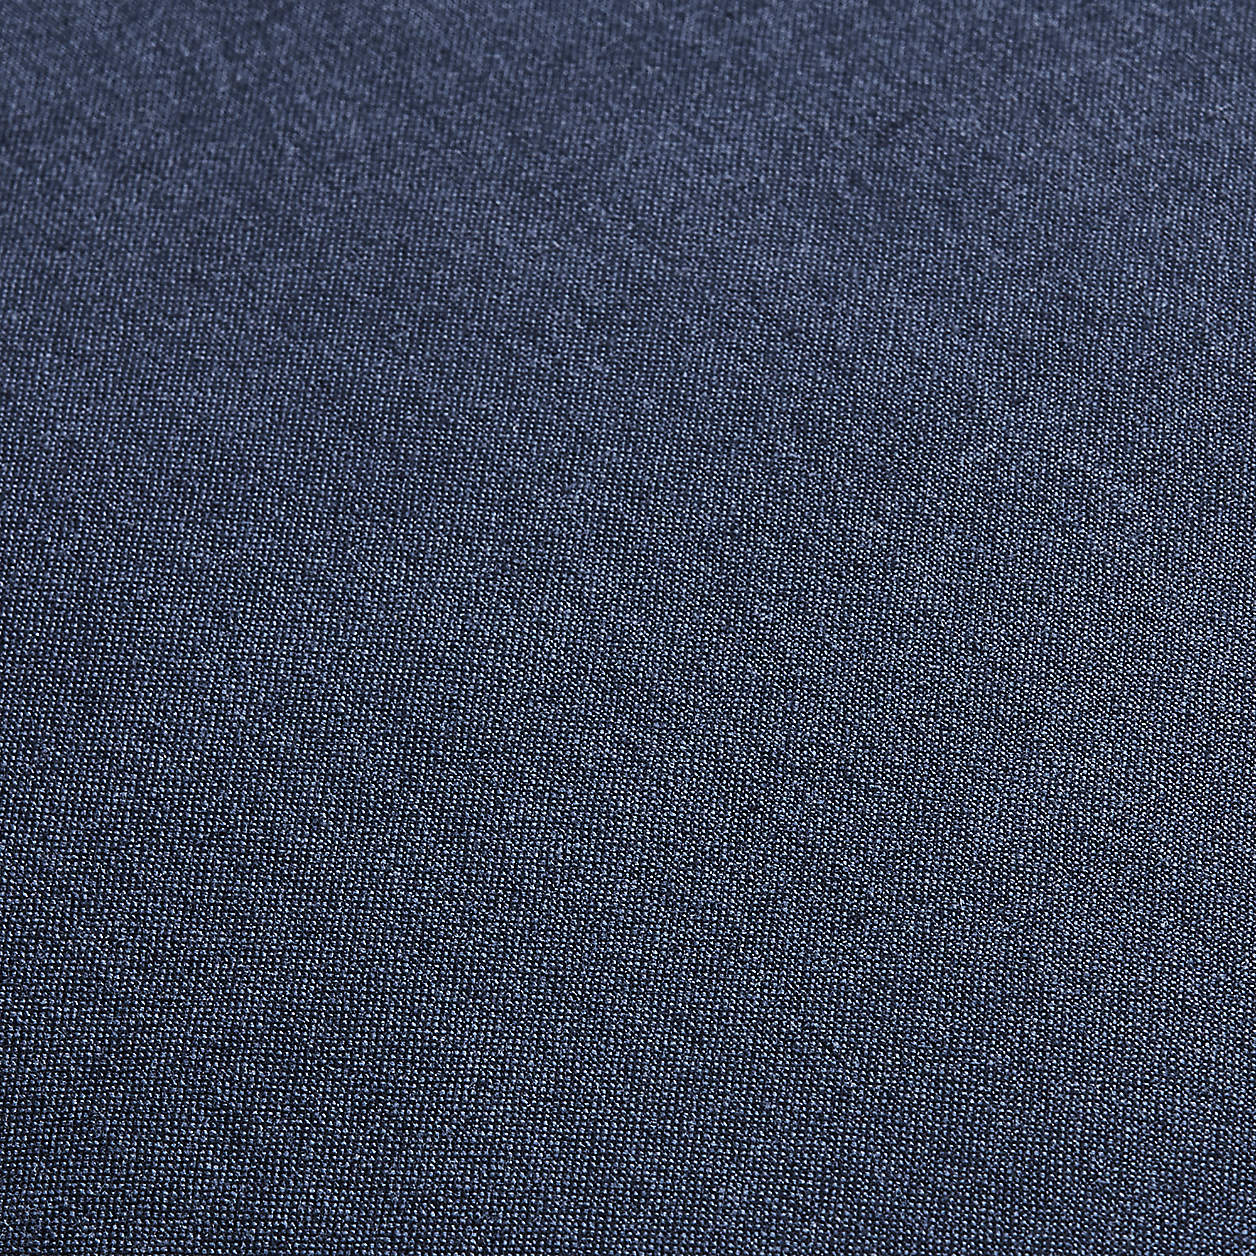 Amalfi Cotton Linen Scallop Edge 23''x23" Deep Indigo Blue Throw Pillow Cover